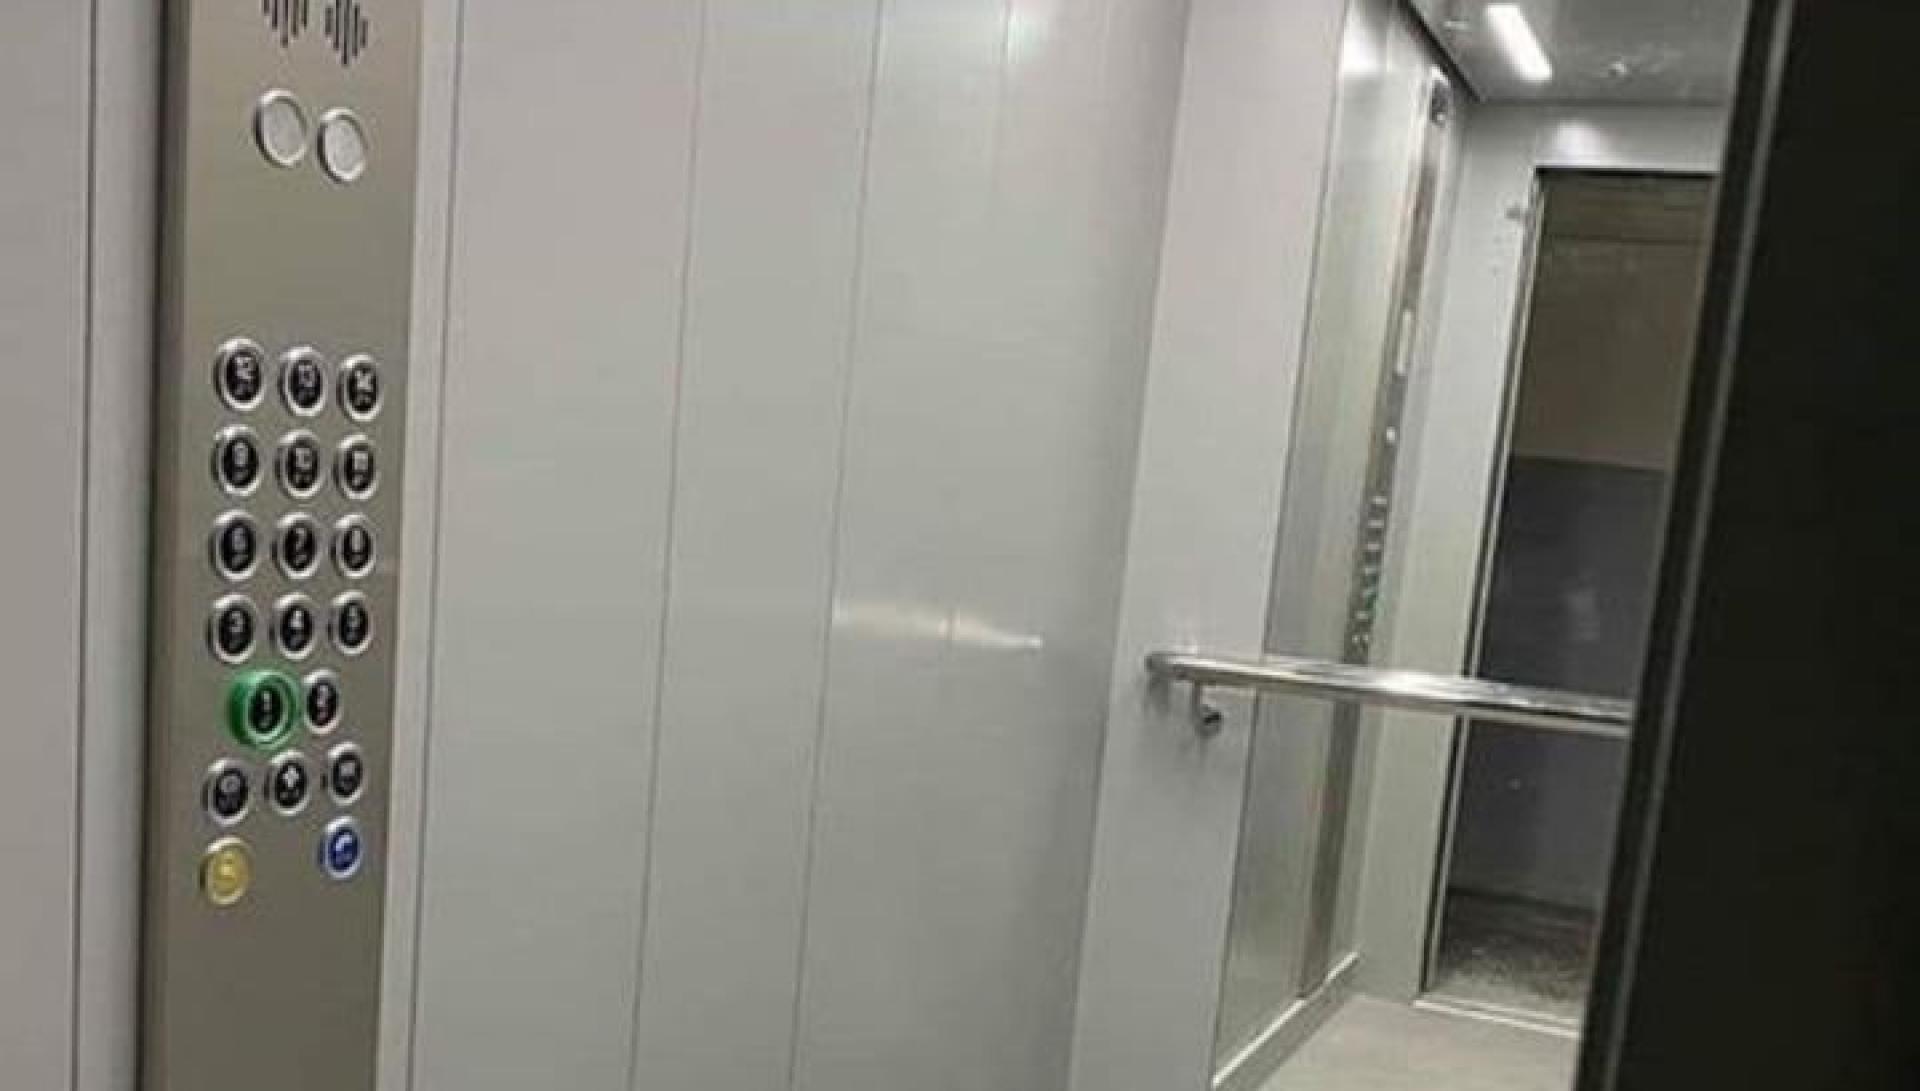 Երևանի շենքերի համար կհայտարարվի 100 վերելակի մրցութ. Գույքագրվել է եւս 400 վերելակ, որ պետք է փոխարինվեն